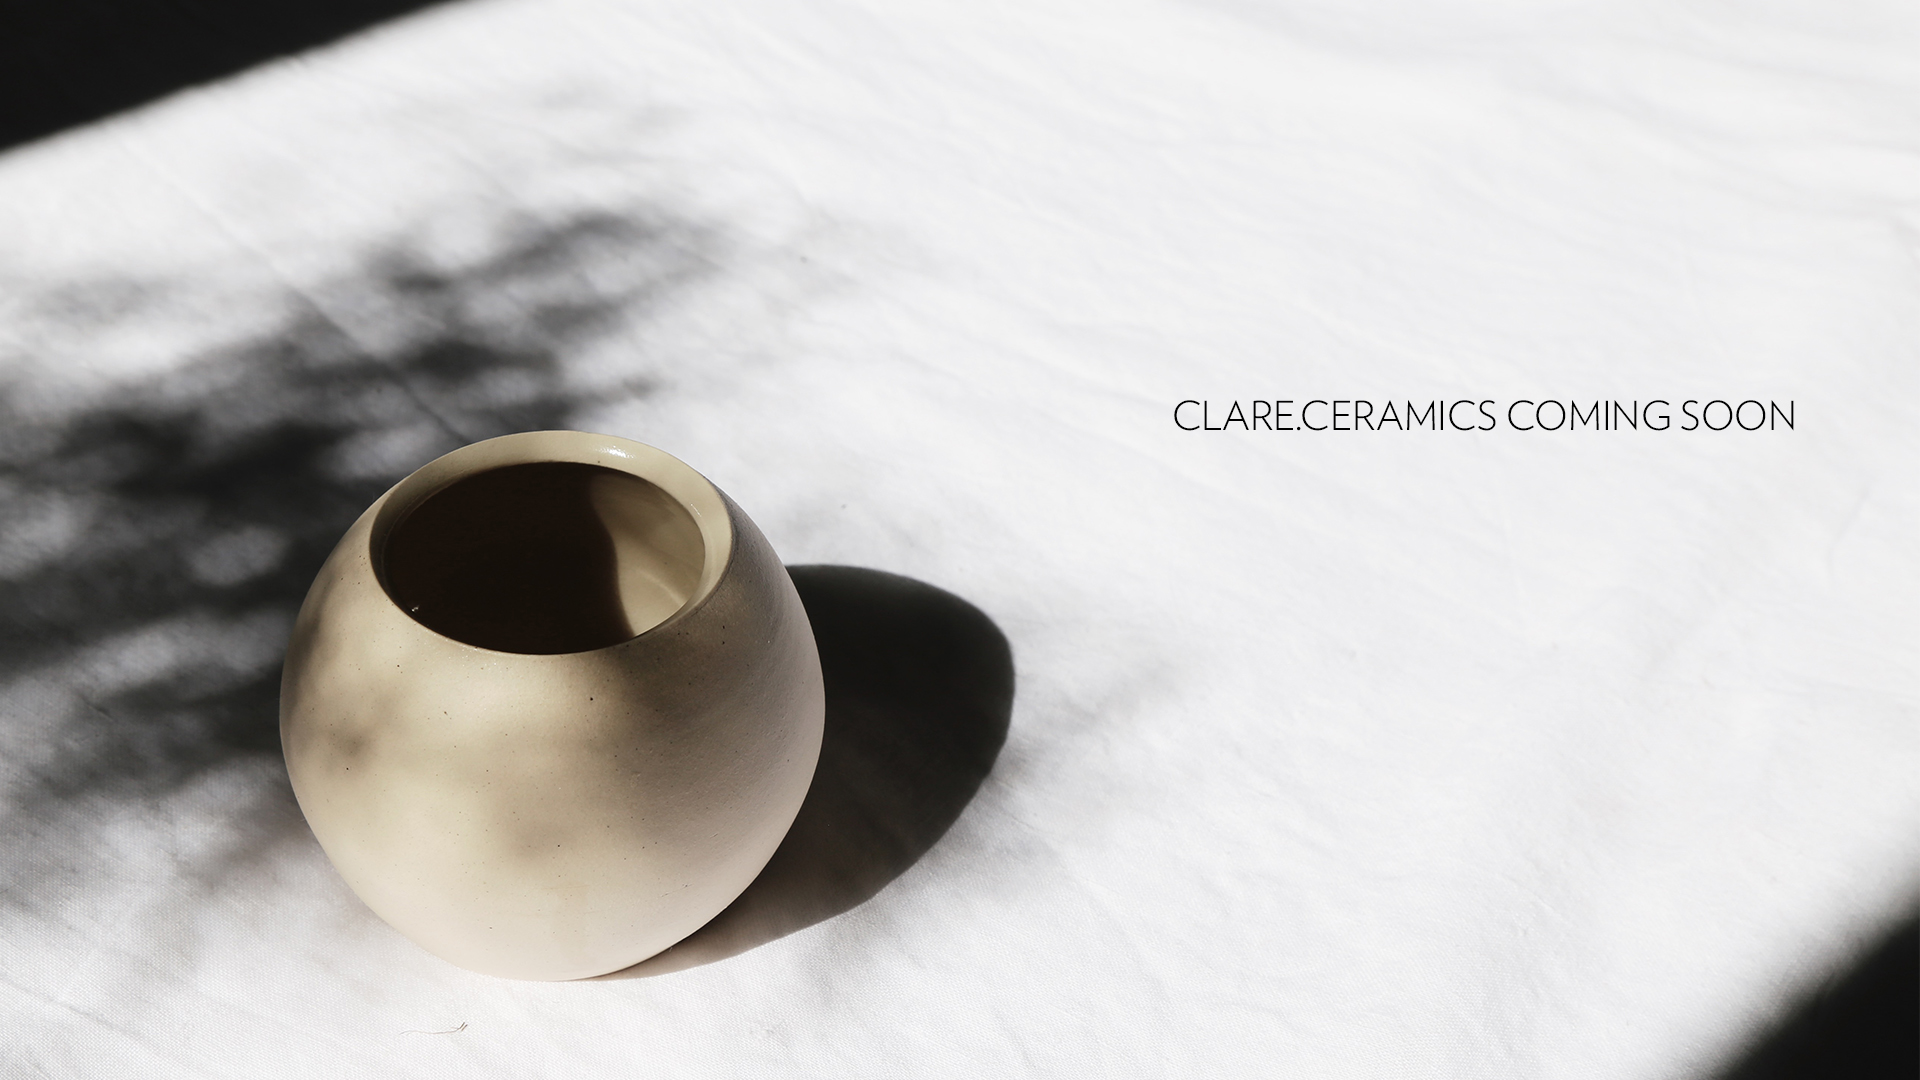 Clare Ceramics Coming Soon